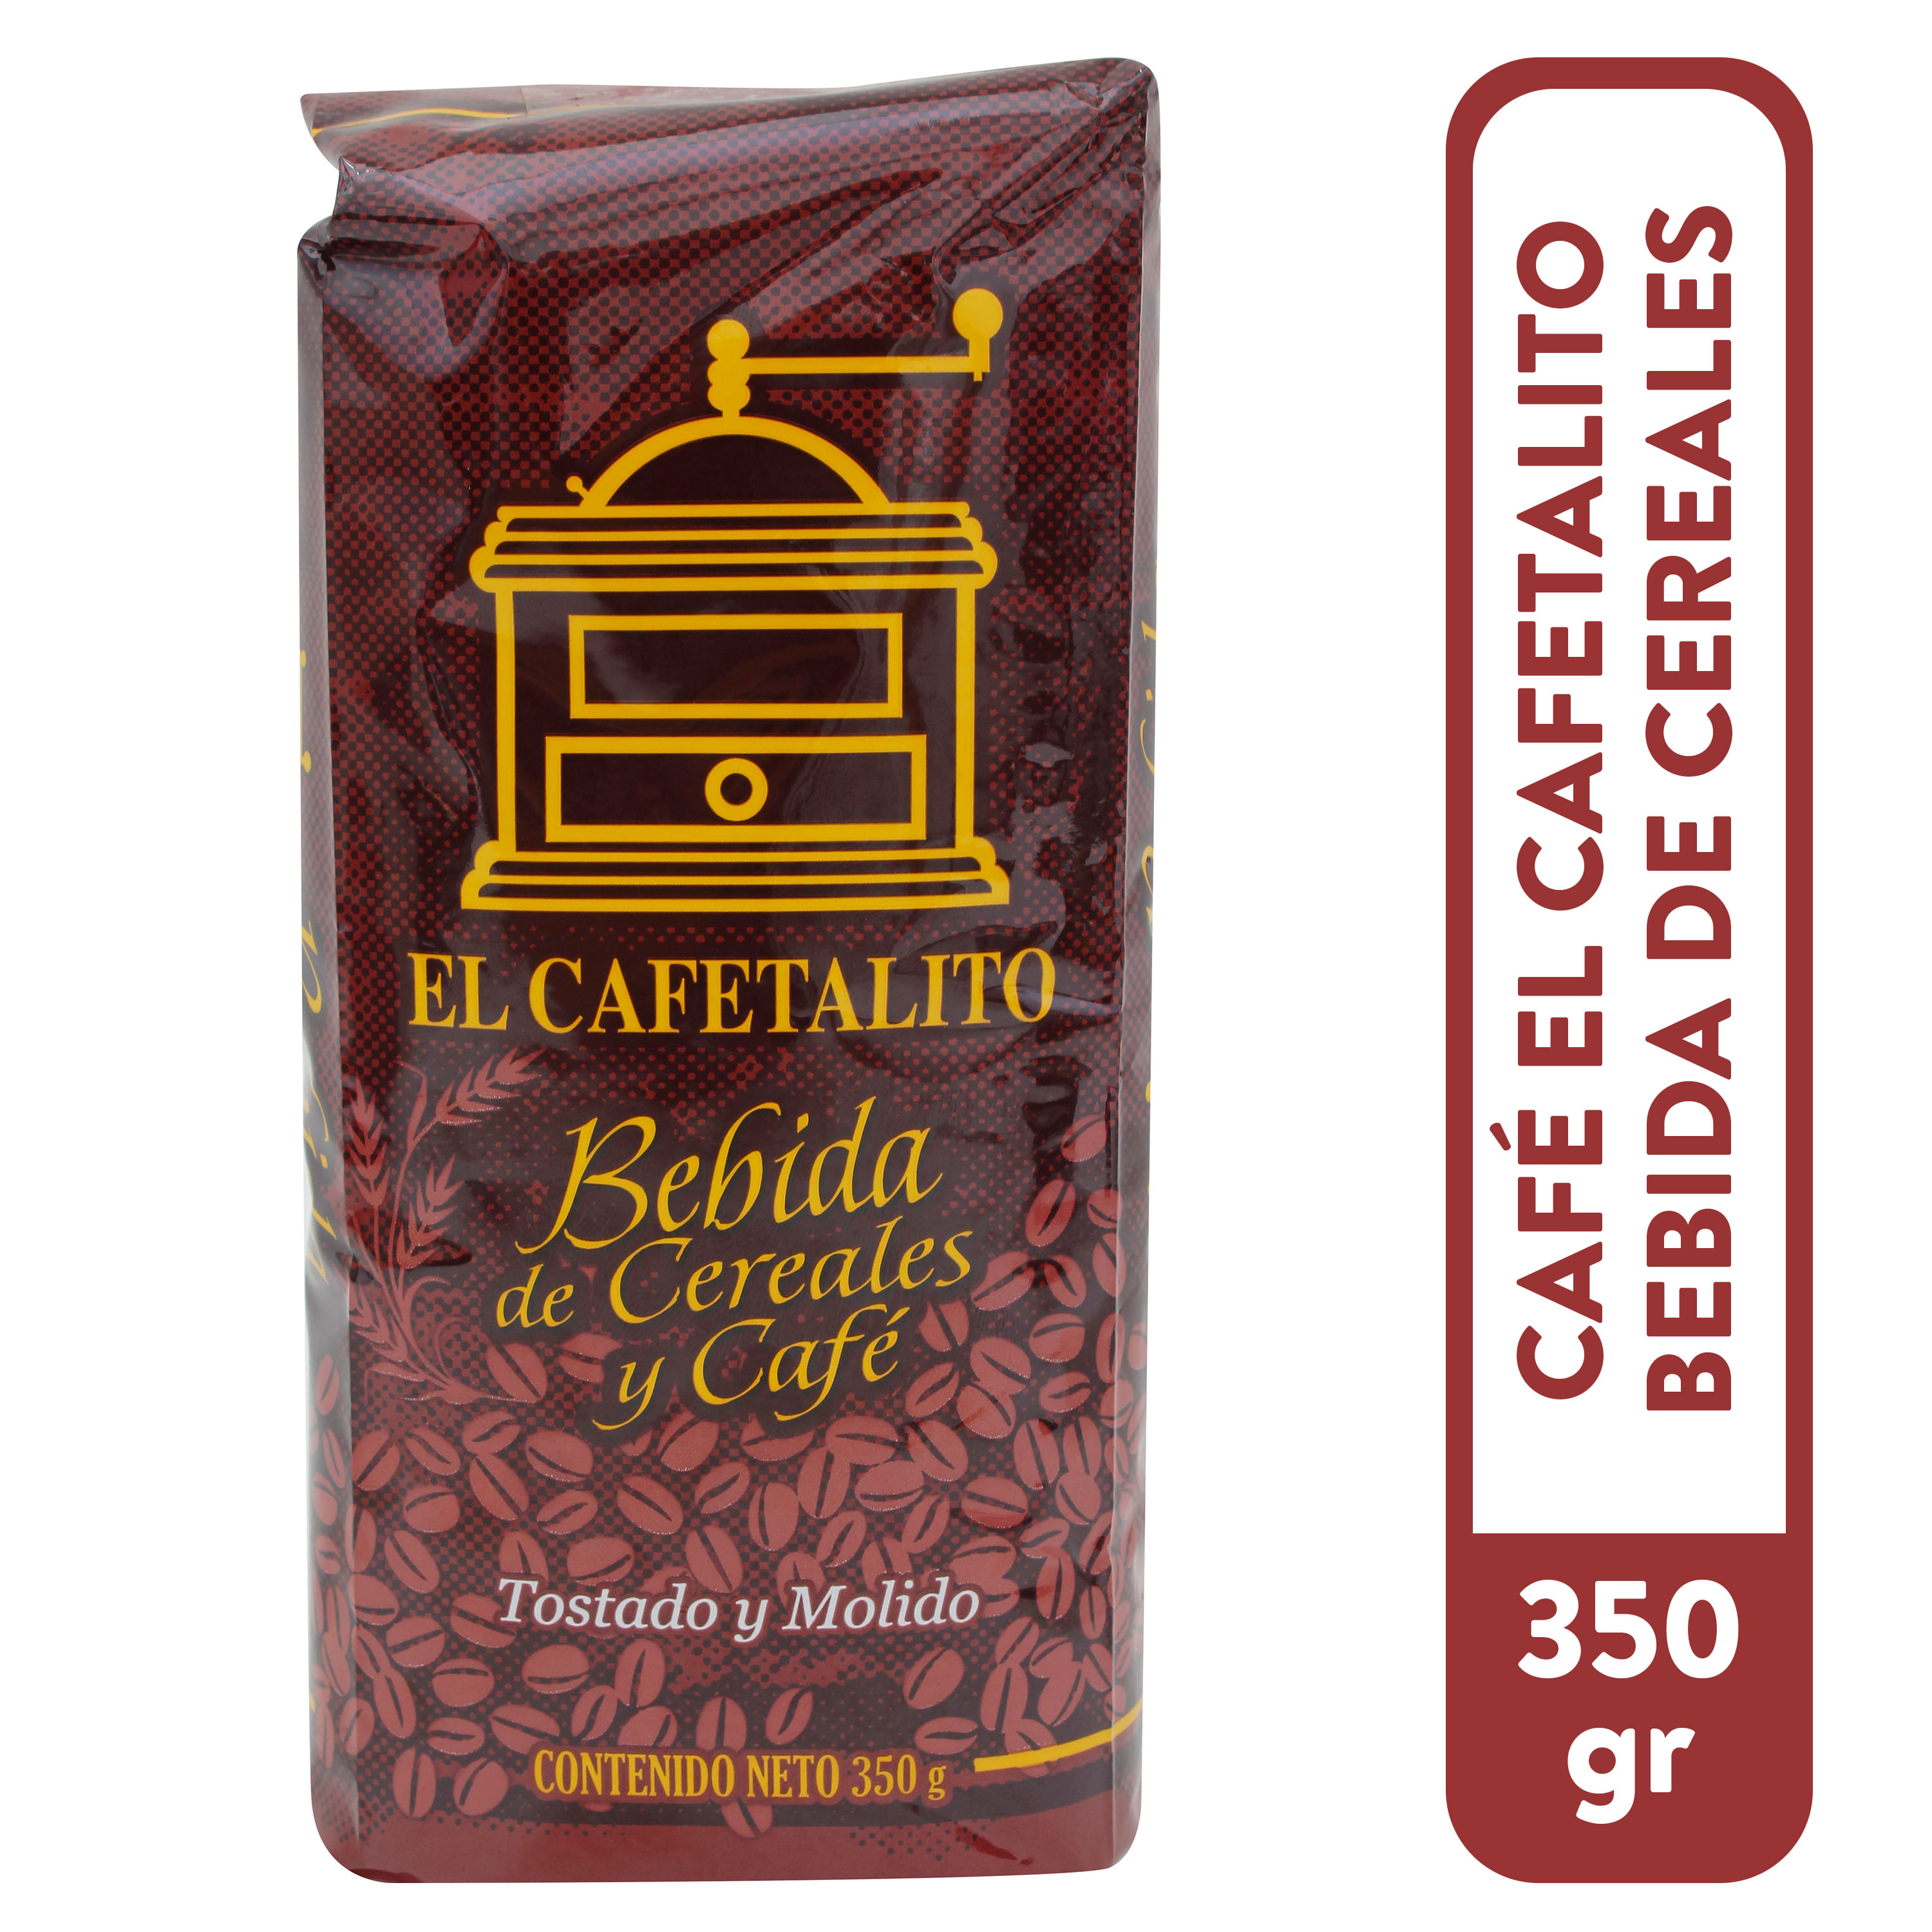 Cafe-El-Cafetalito-Bebida-De-Cereales-350gr-1-4537